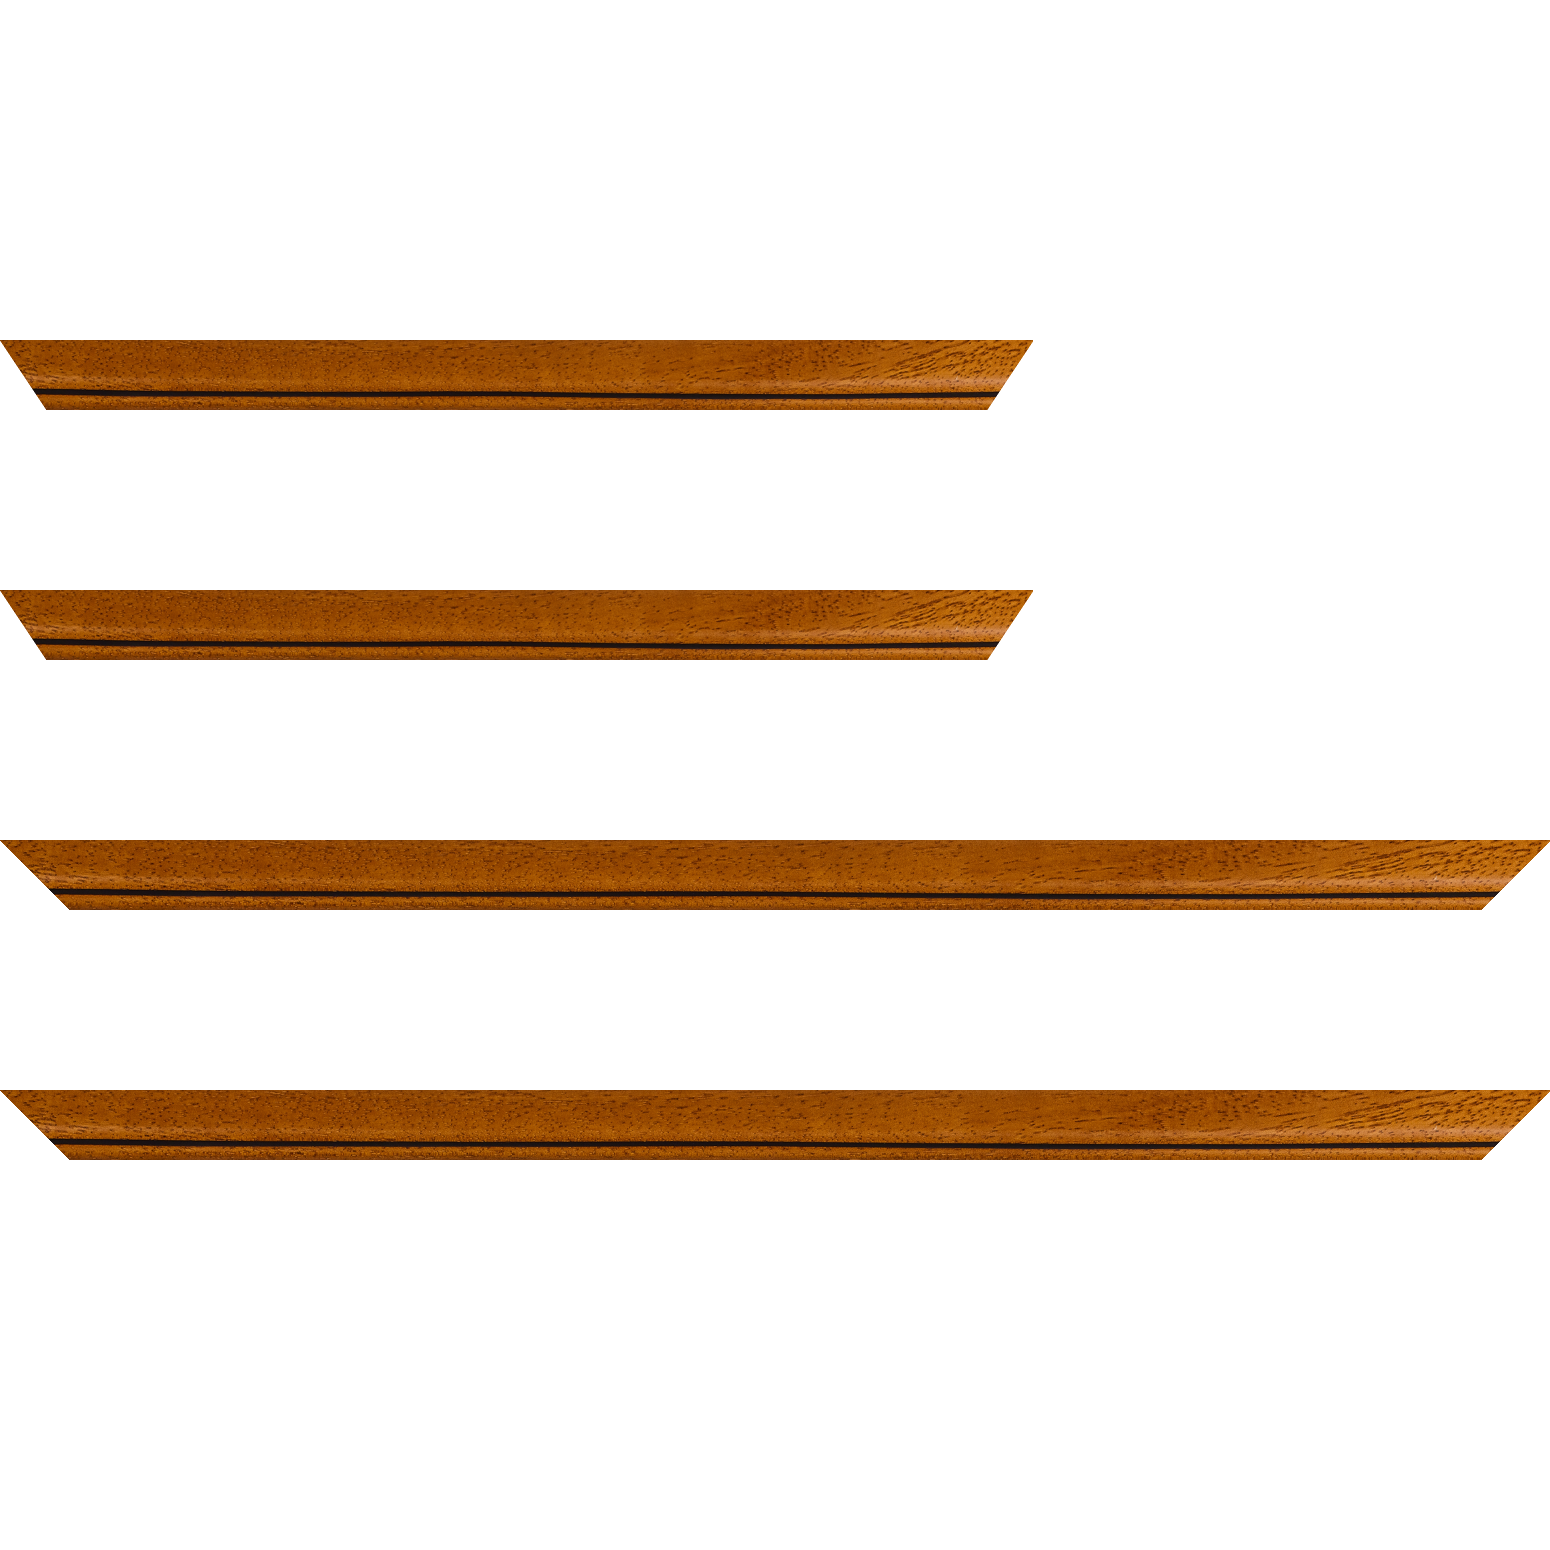 Baguette bois profil bombé largeur 2.4cm couleur marron ton bois satiné filet noir - 20x60